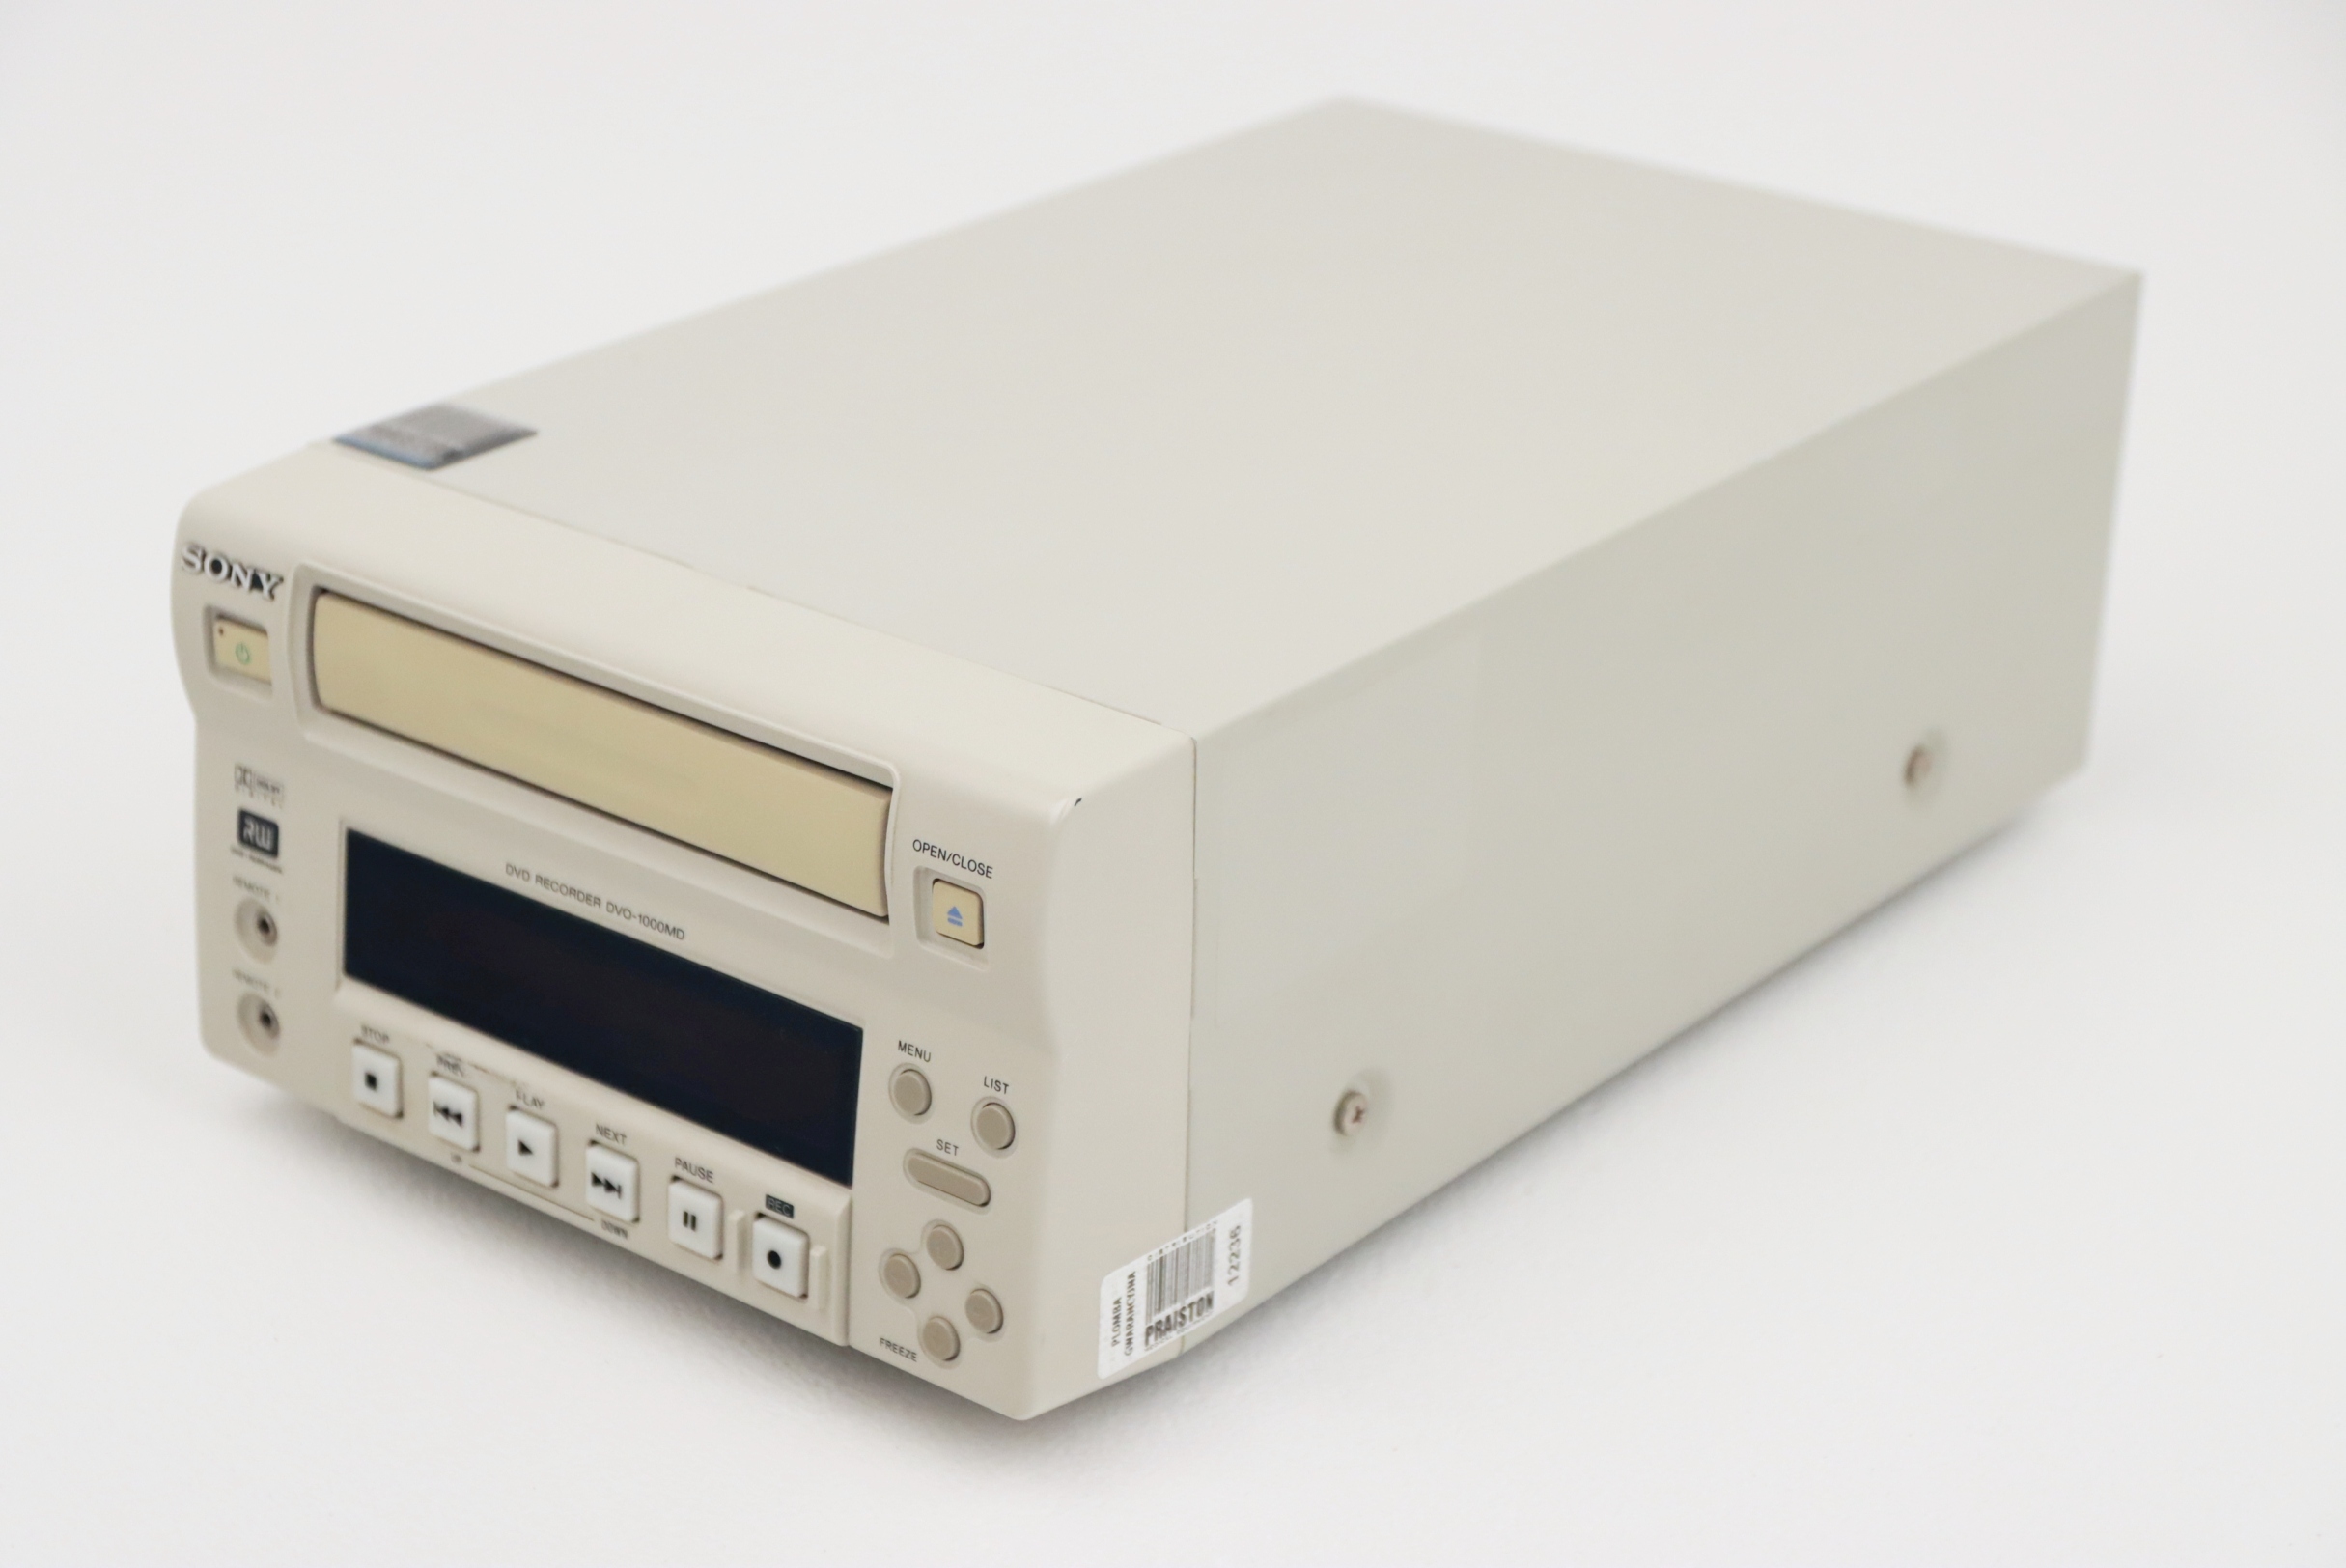 Videoprintery używane SONY DVO - 1000MD - Praiston rekondycjonowany